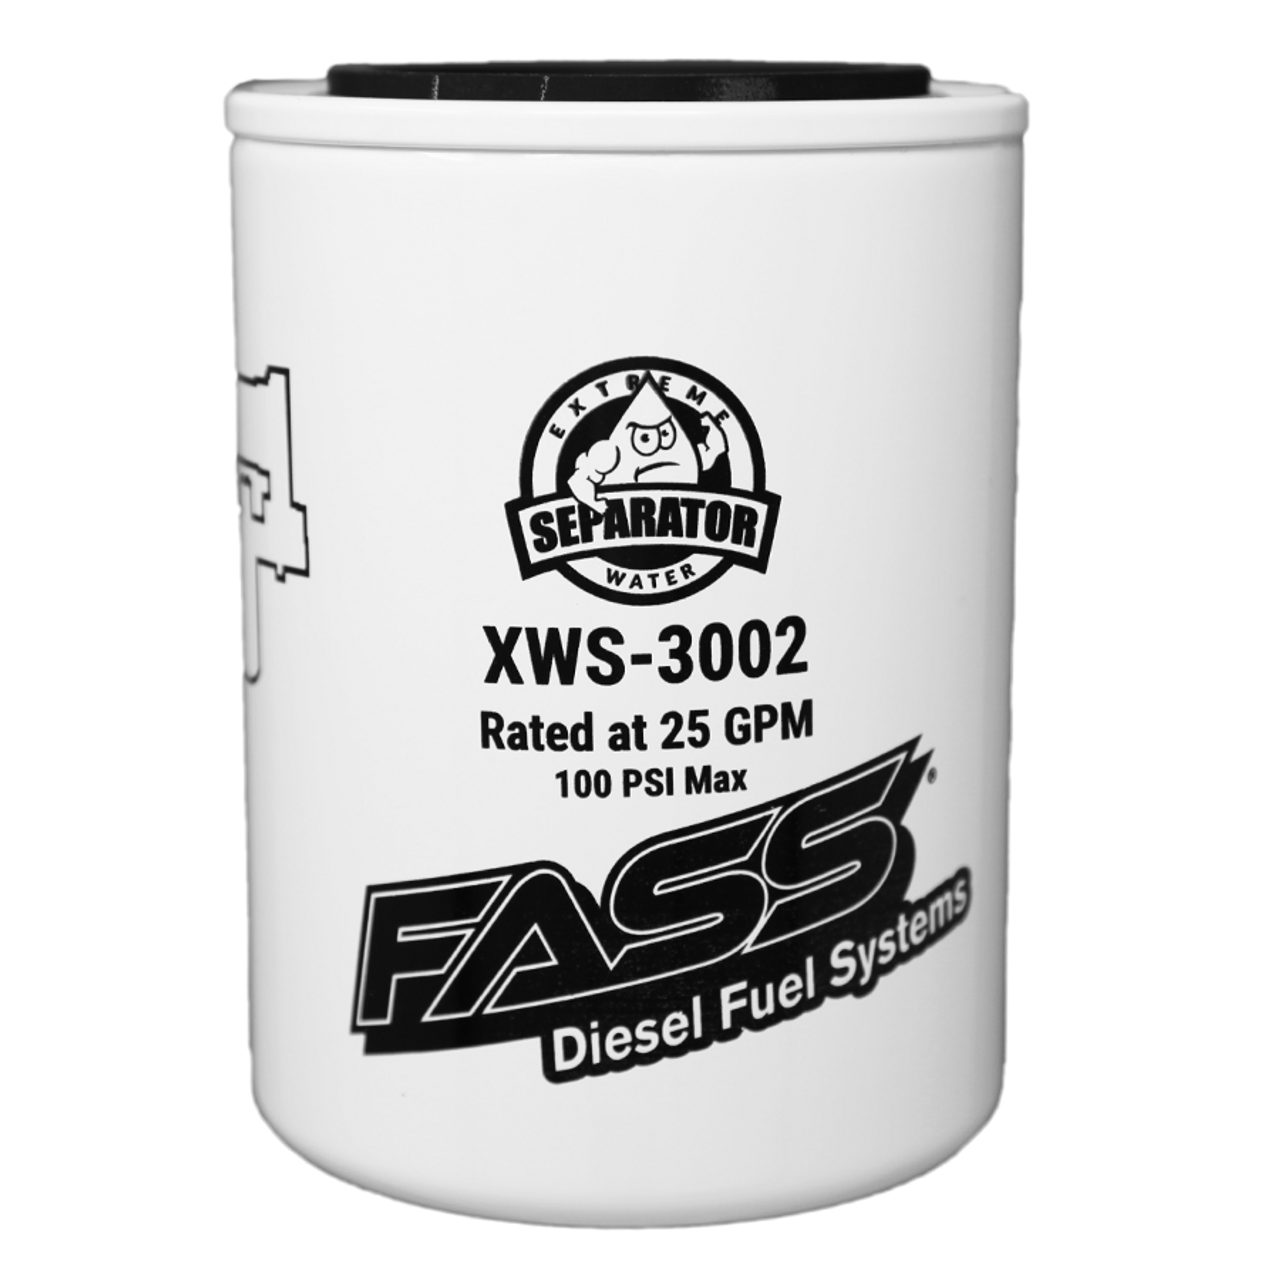 FASS 6.7L Powerstroke Water Separator